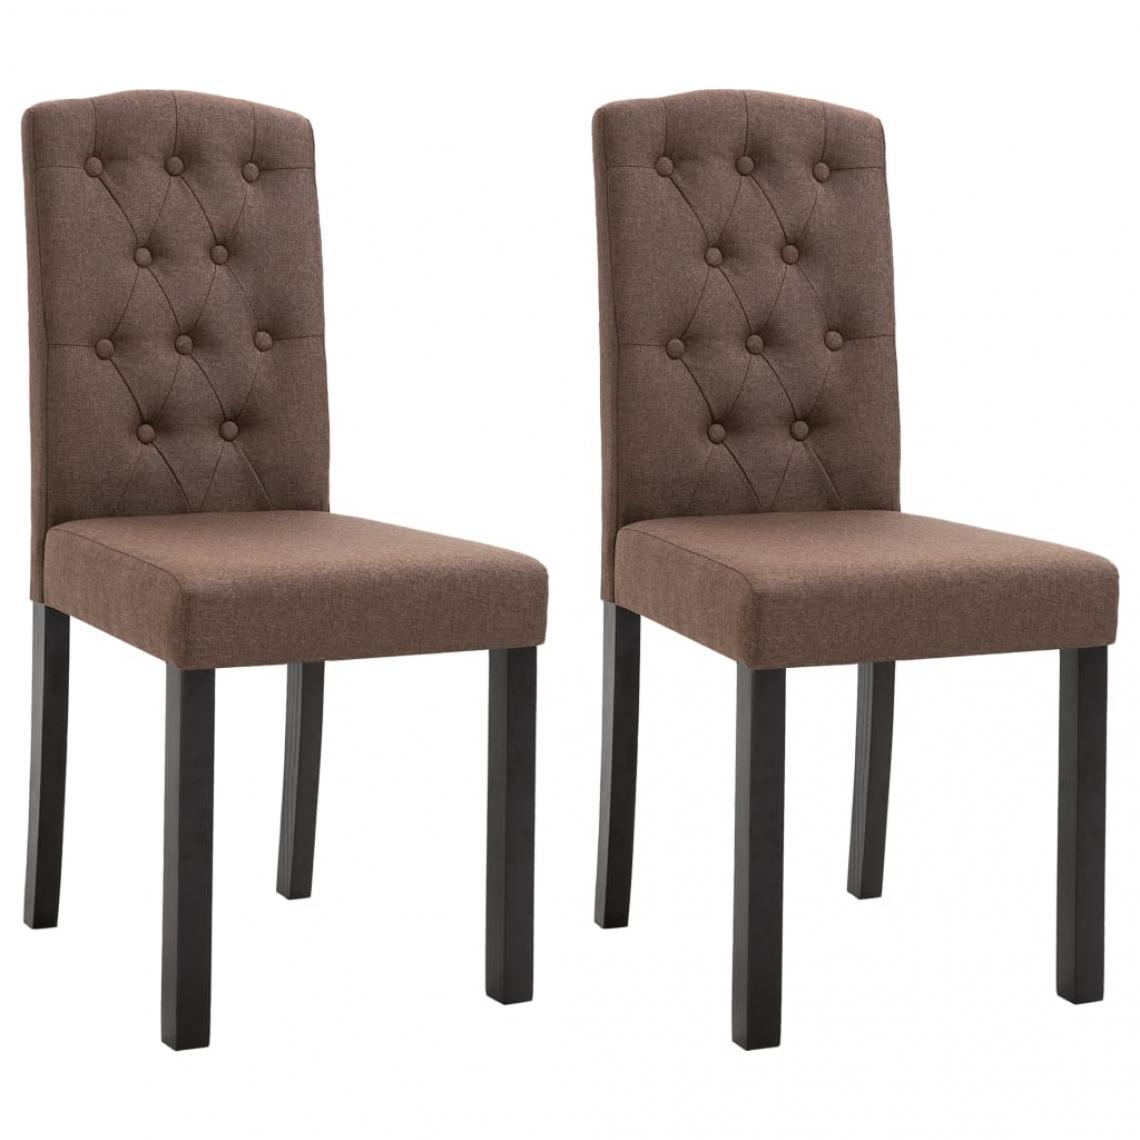 Decoshop26 - Lot de 2 chaises de salle à manger cuisine design classique tissu marron CDS020759 - Chaises